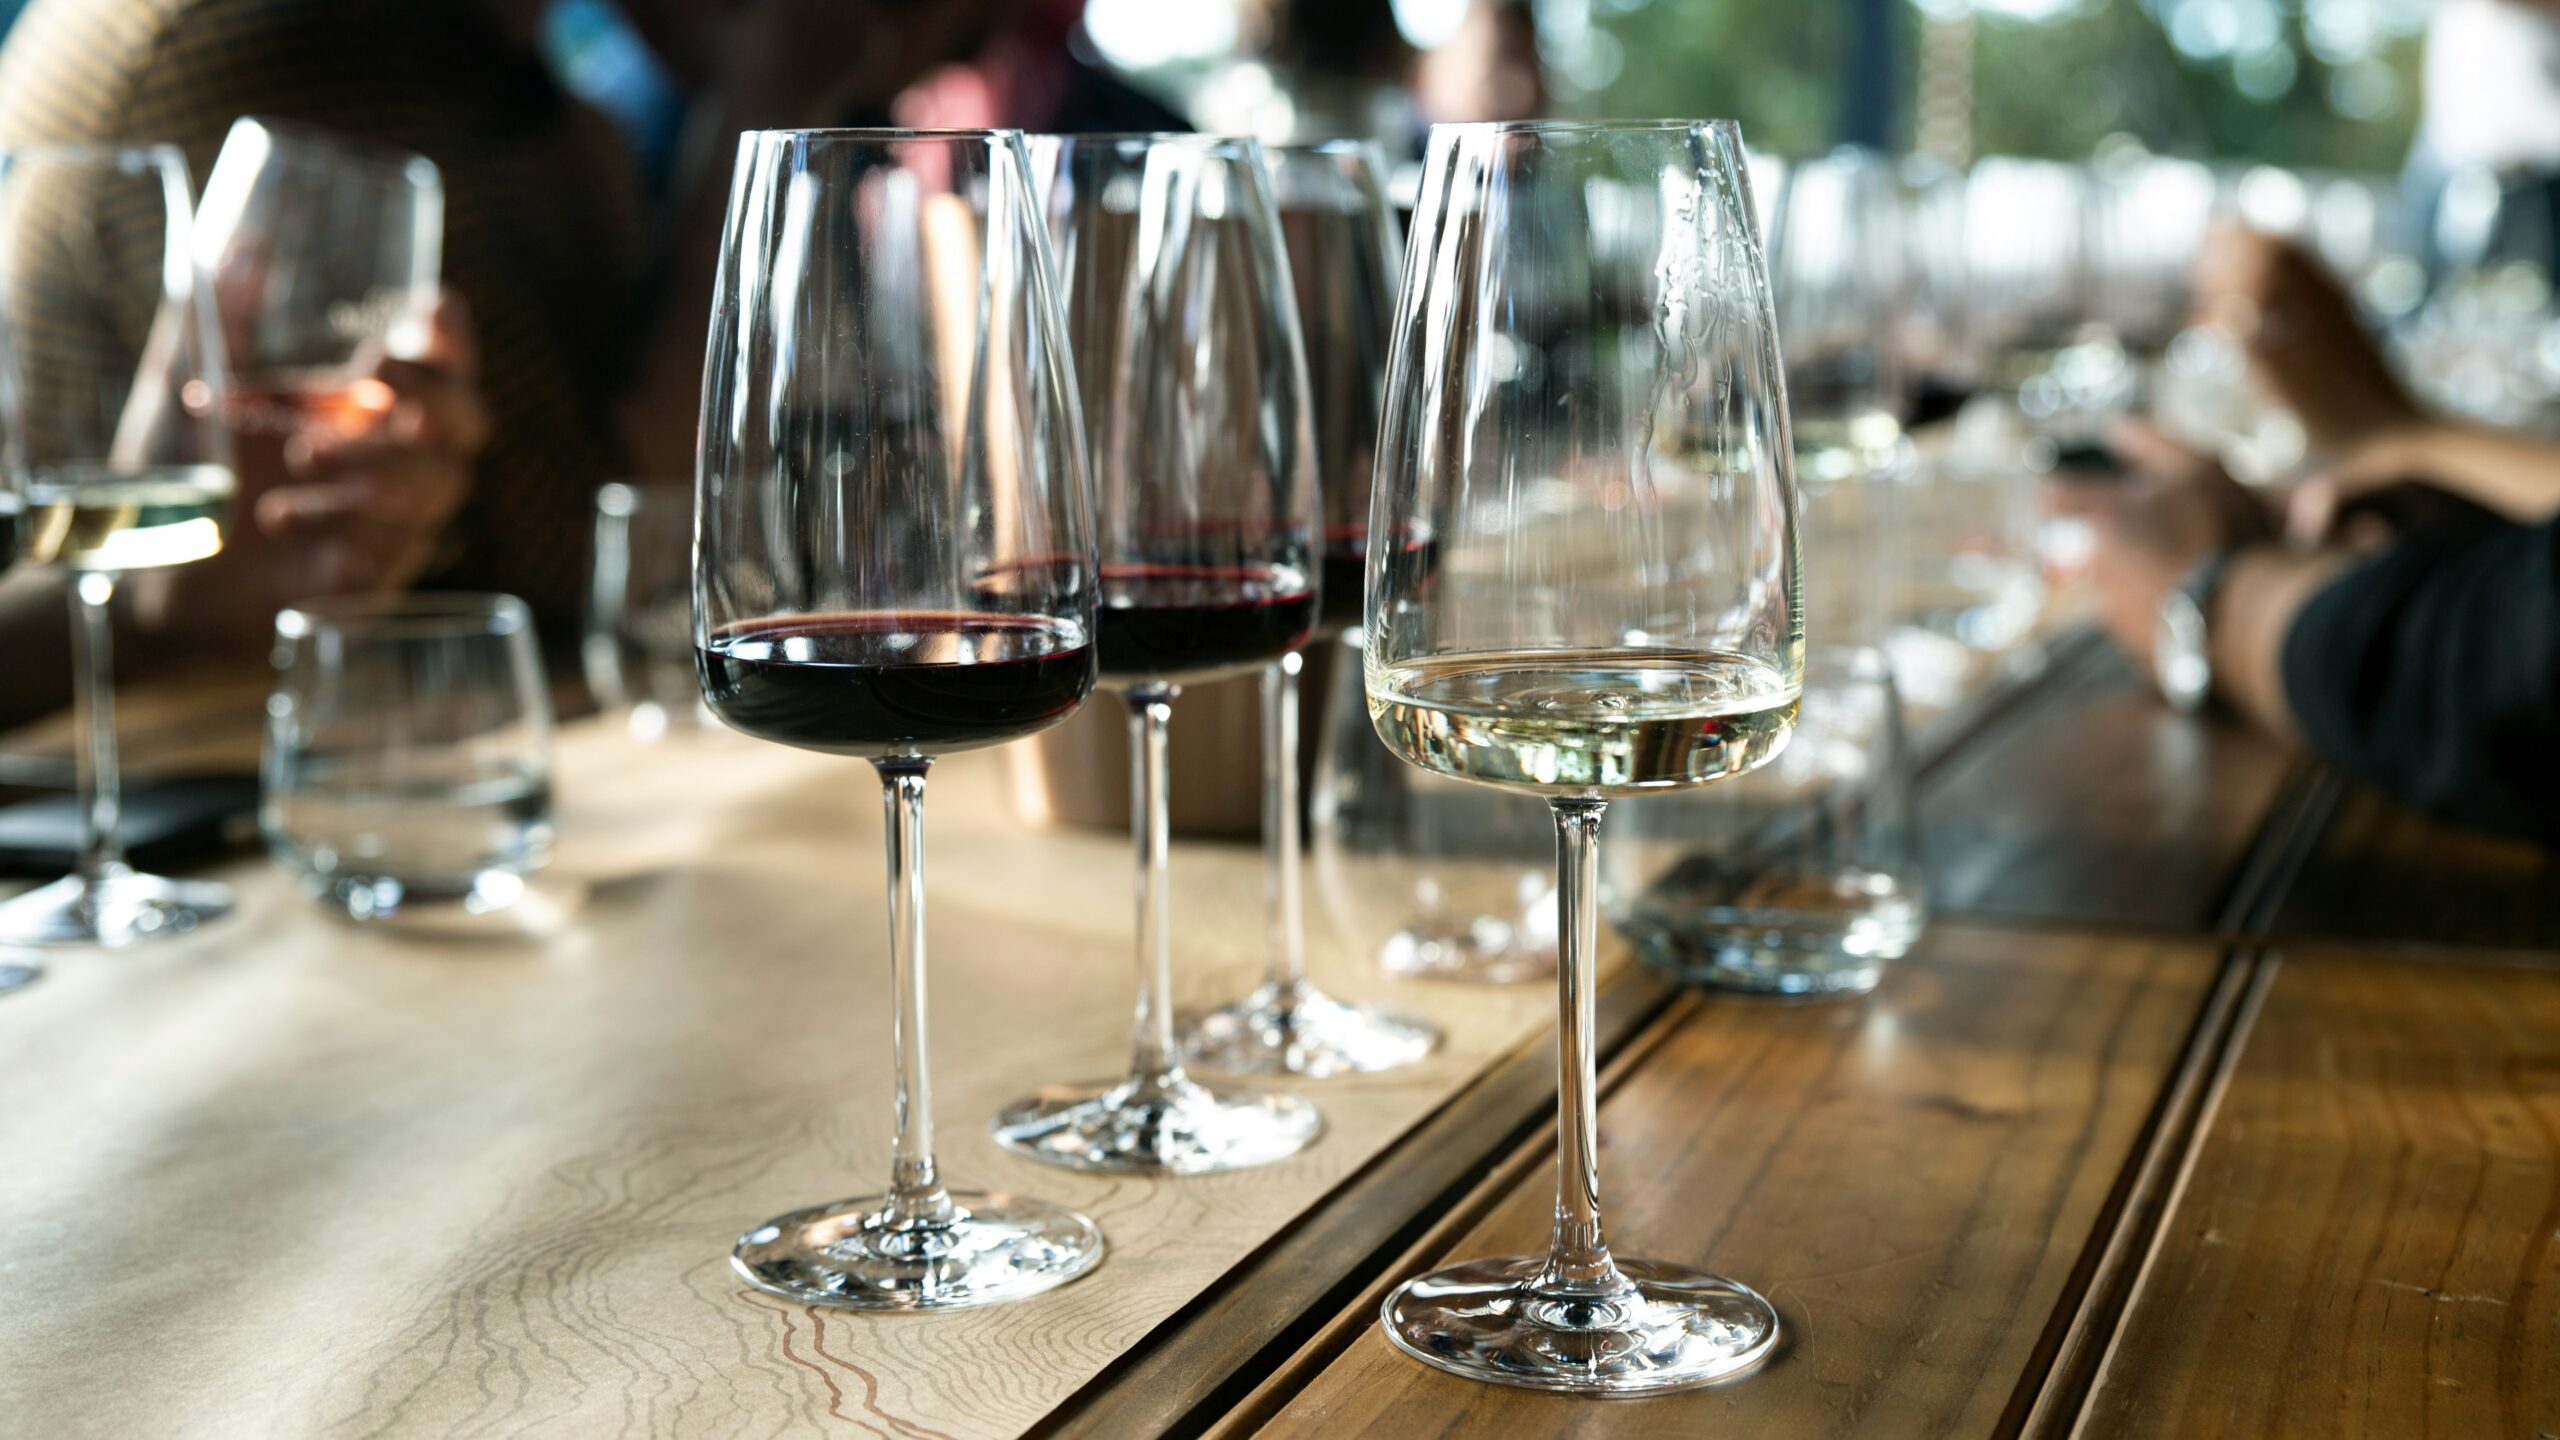 Rioja Wines Experience Toronto